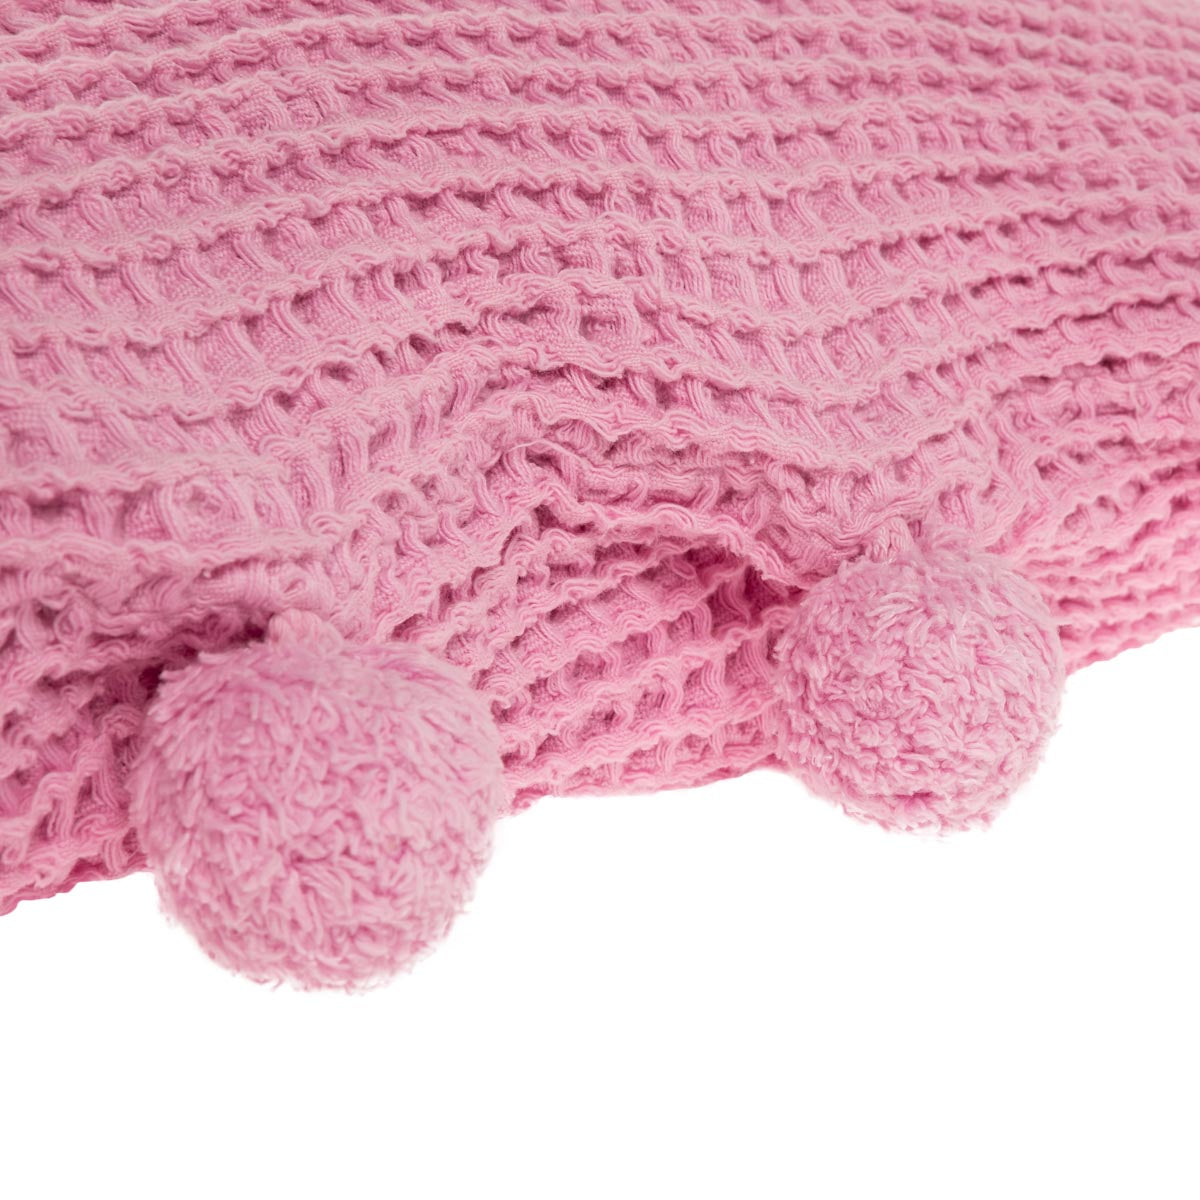 Pom pom cushion cover, pink